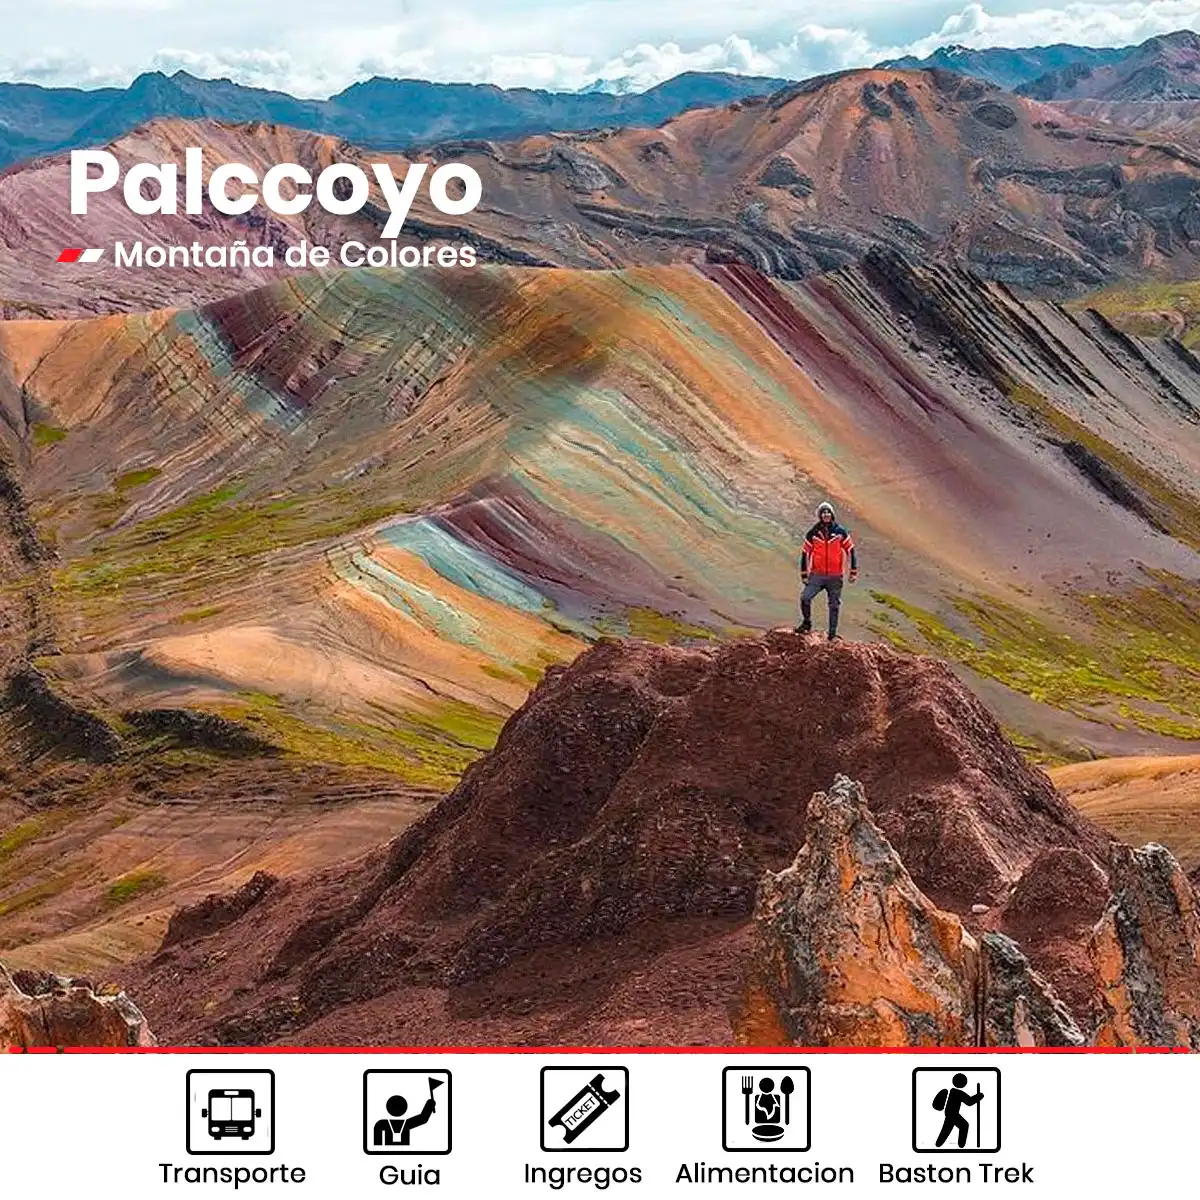 Tour Palccoyo montaña de colores wa.me/51964265060